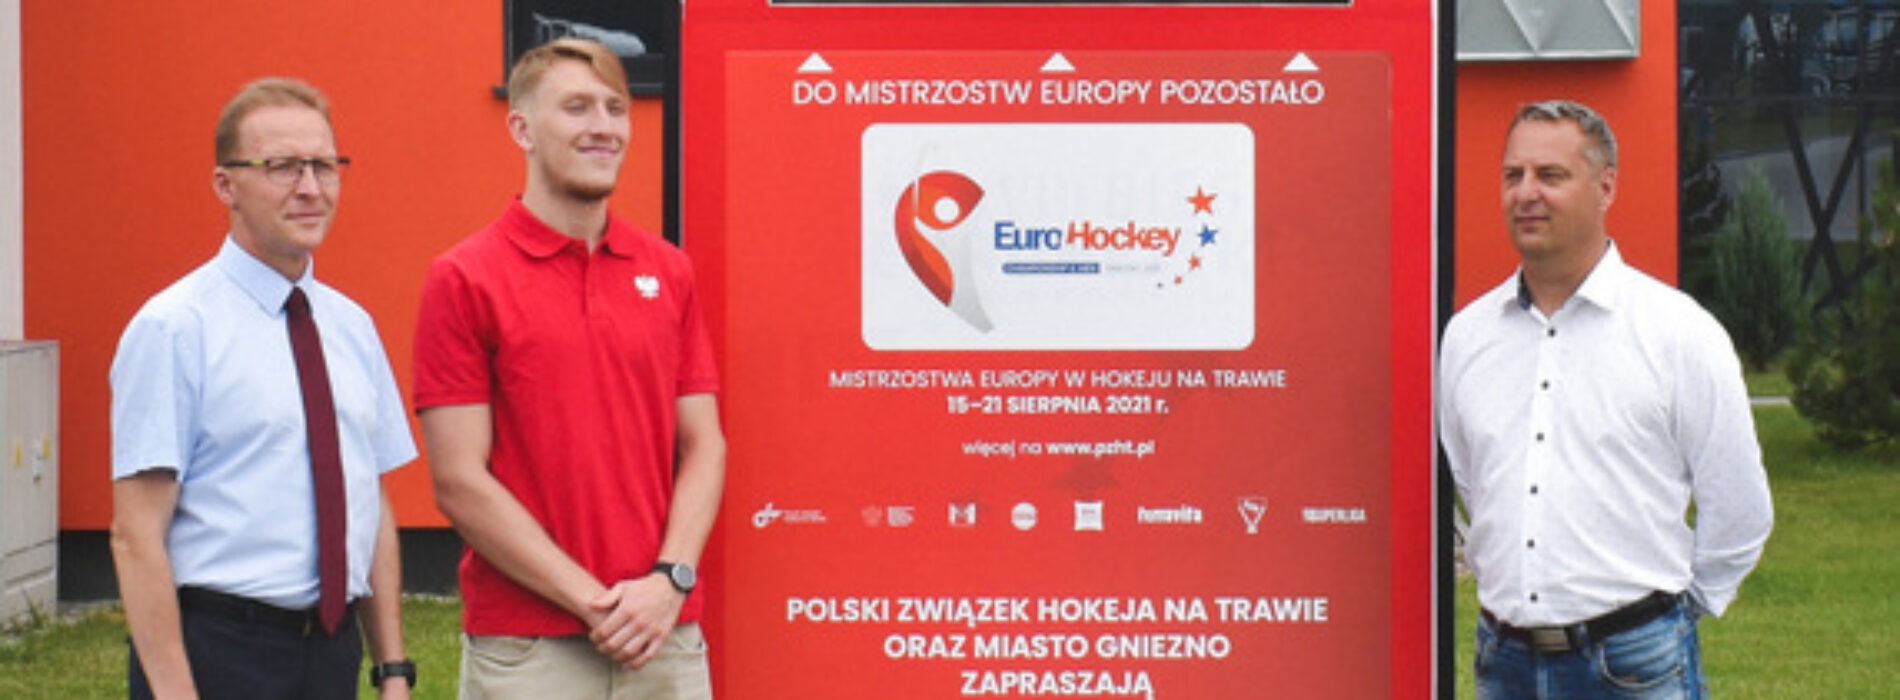 Mistrzostwa Europy gr. B – Eurohockey Championship II w Gnieźnie